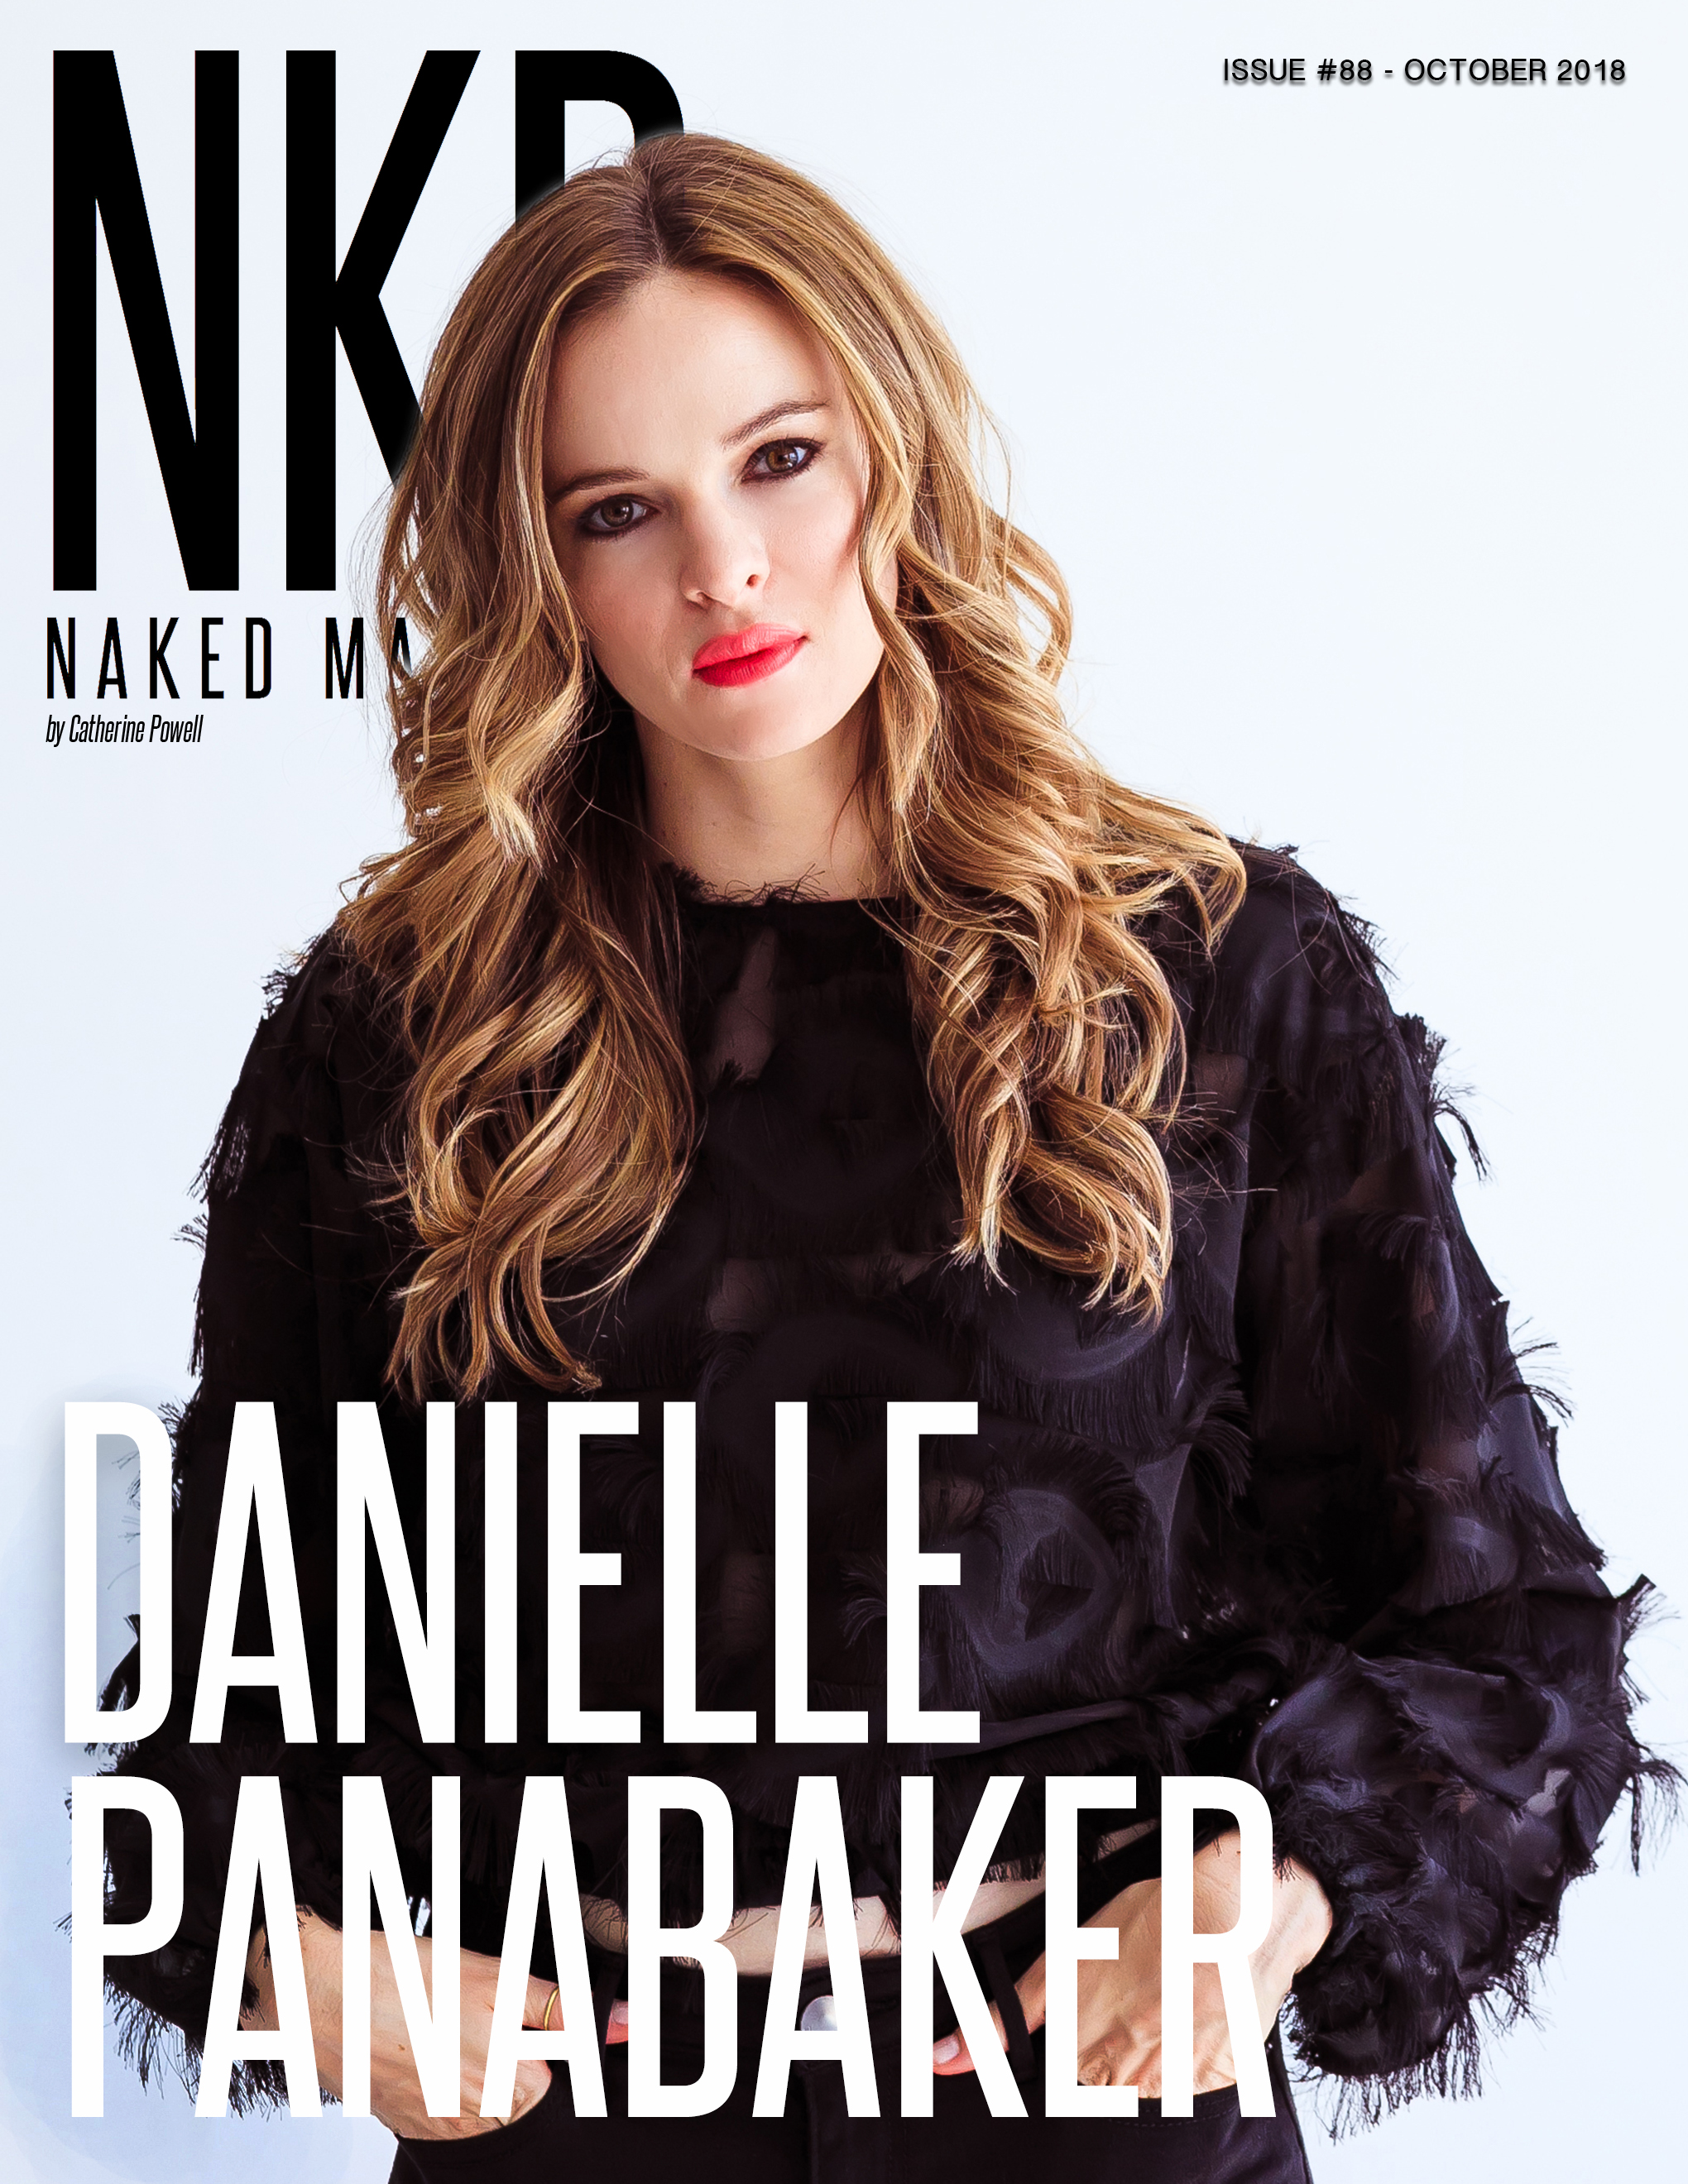 Danielle panabaker cover.jpg